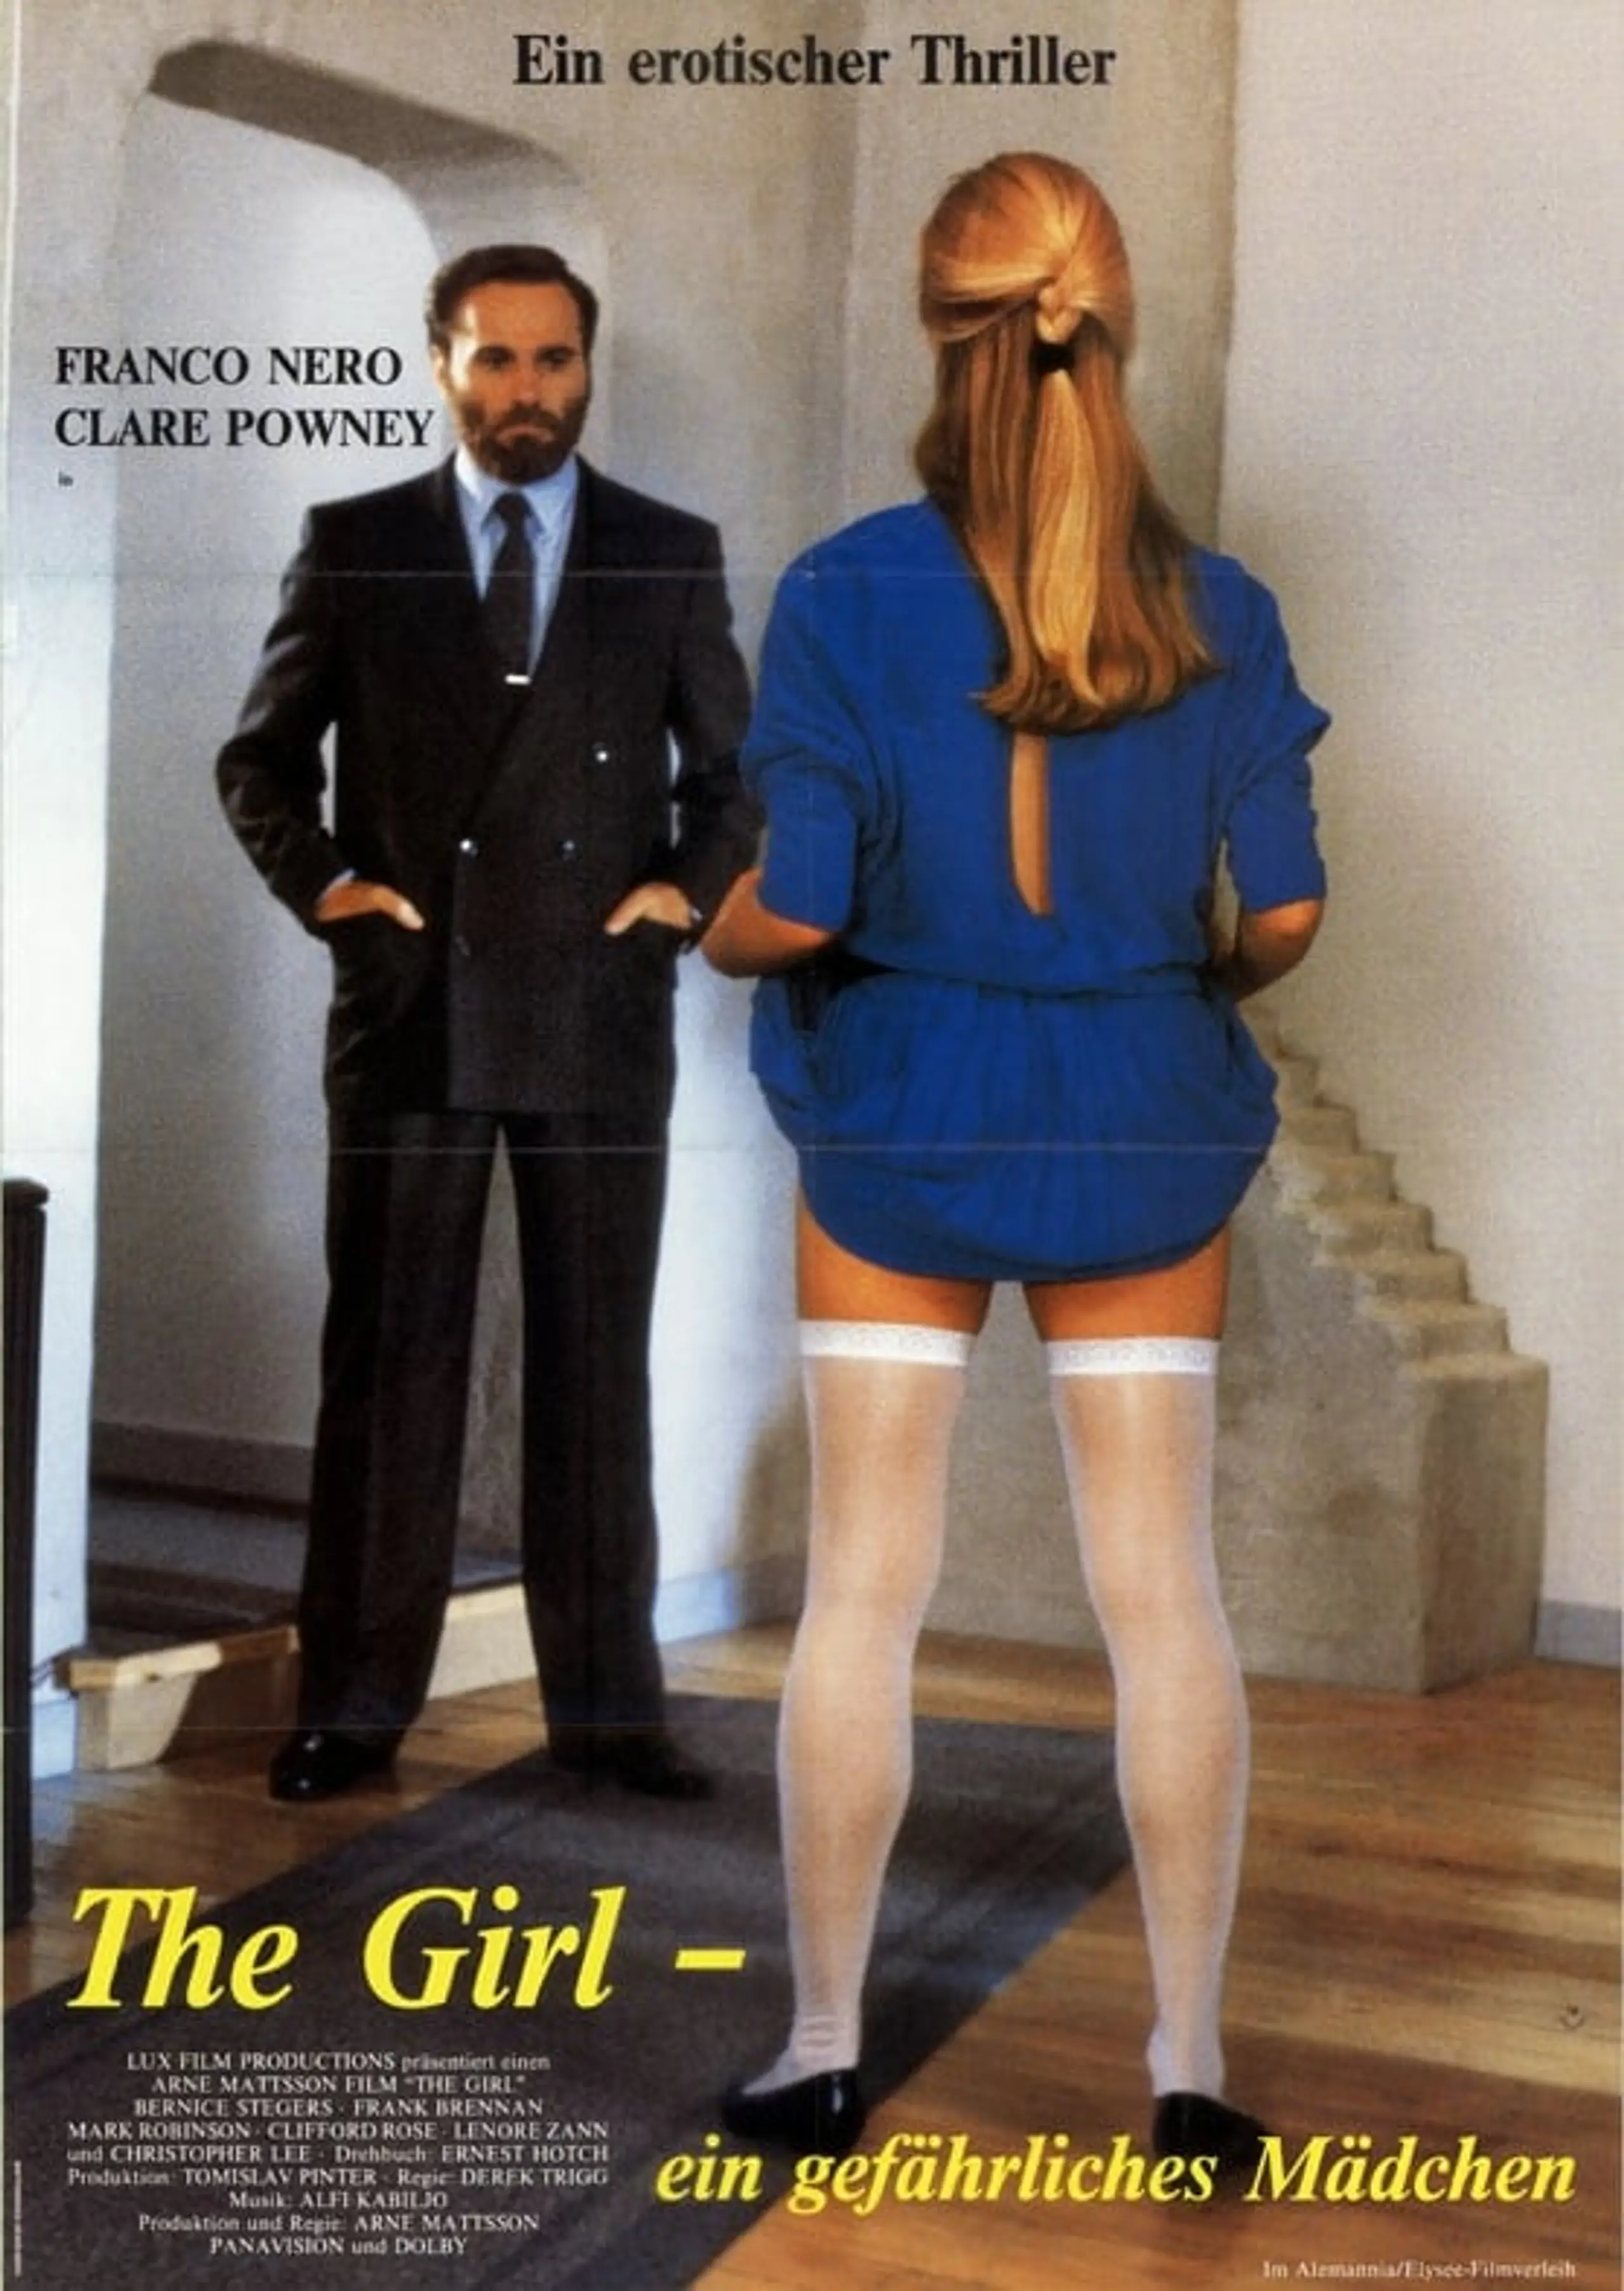 The Girl – Ein gefährliches Mädchen